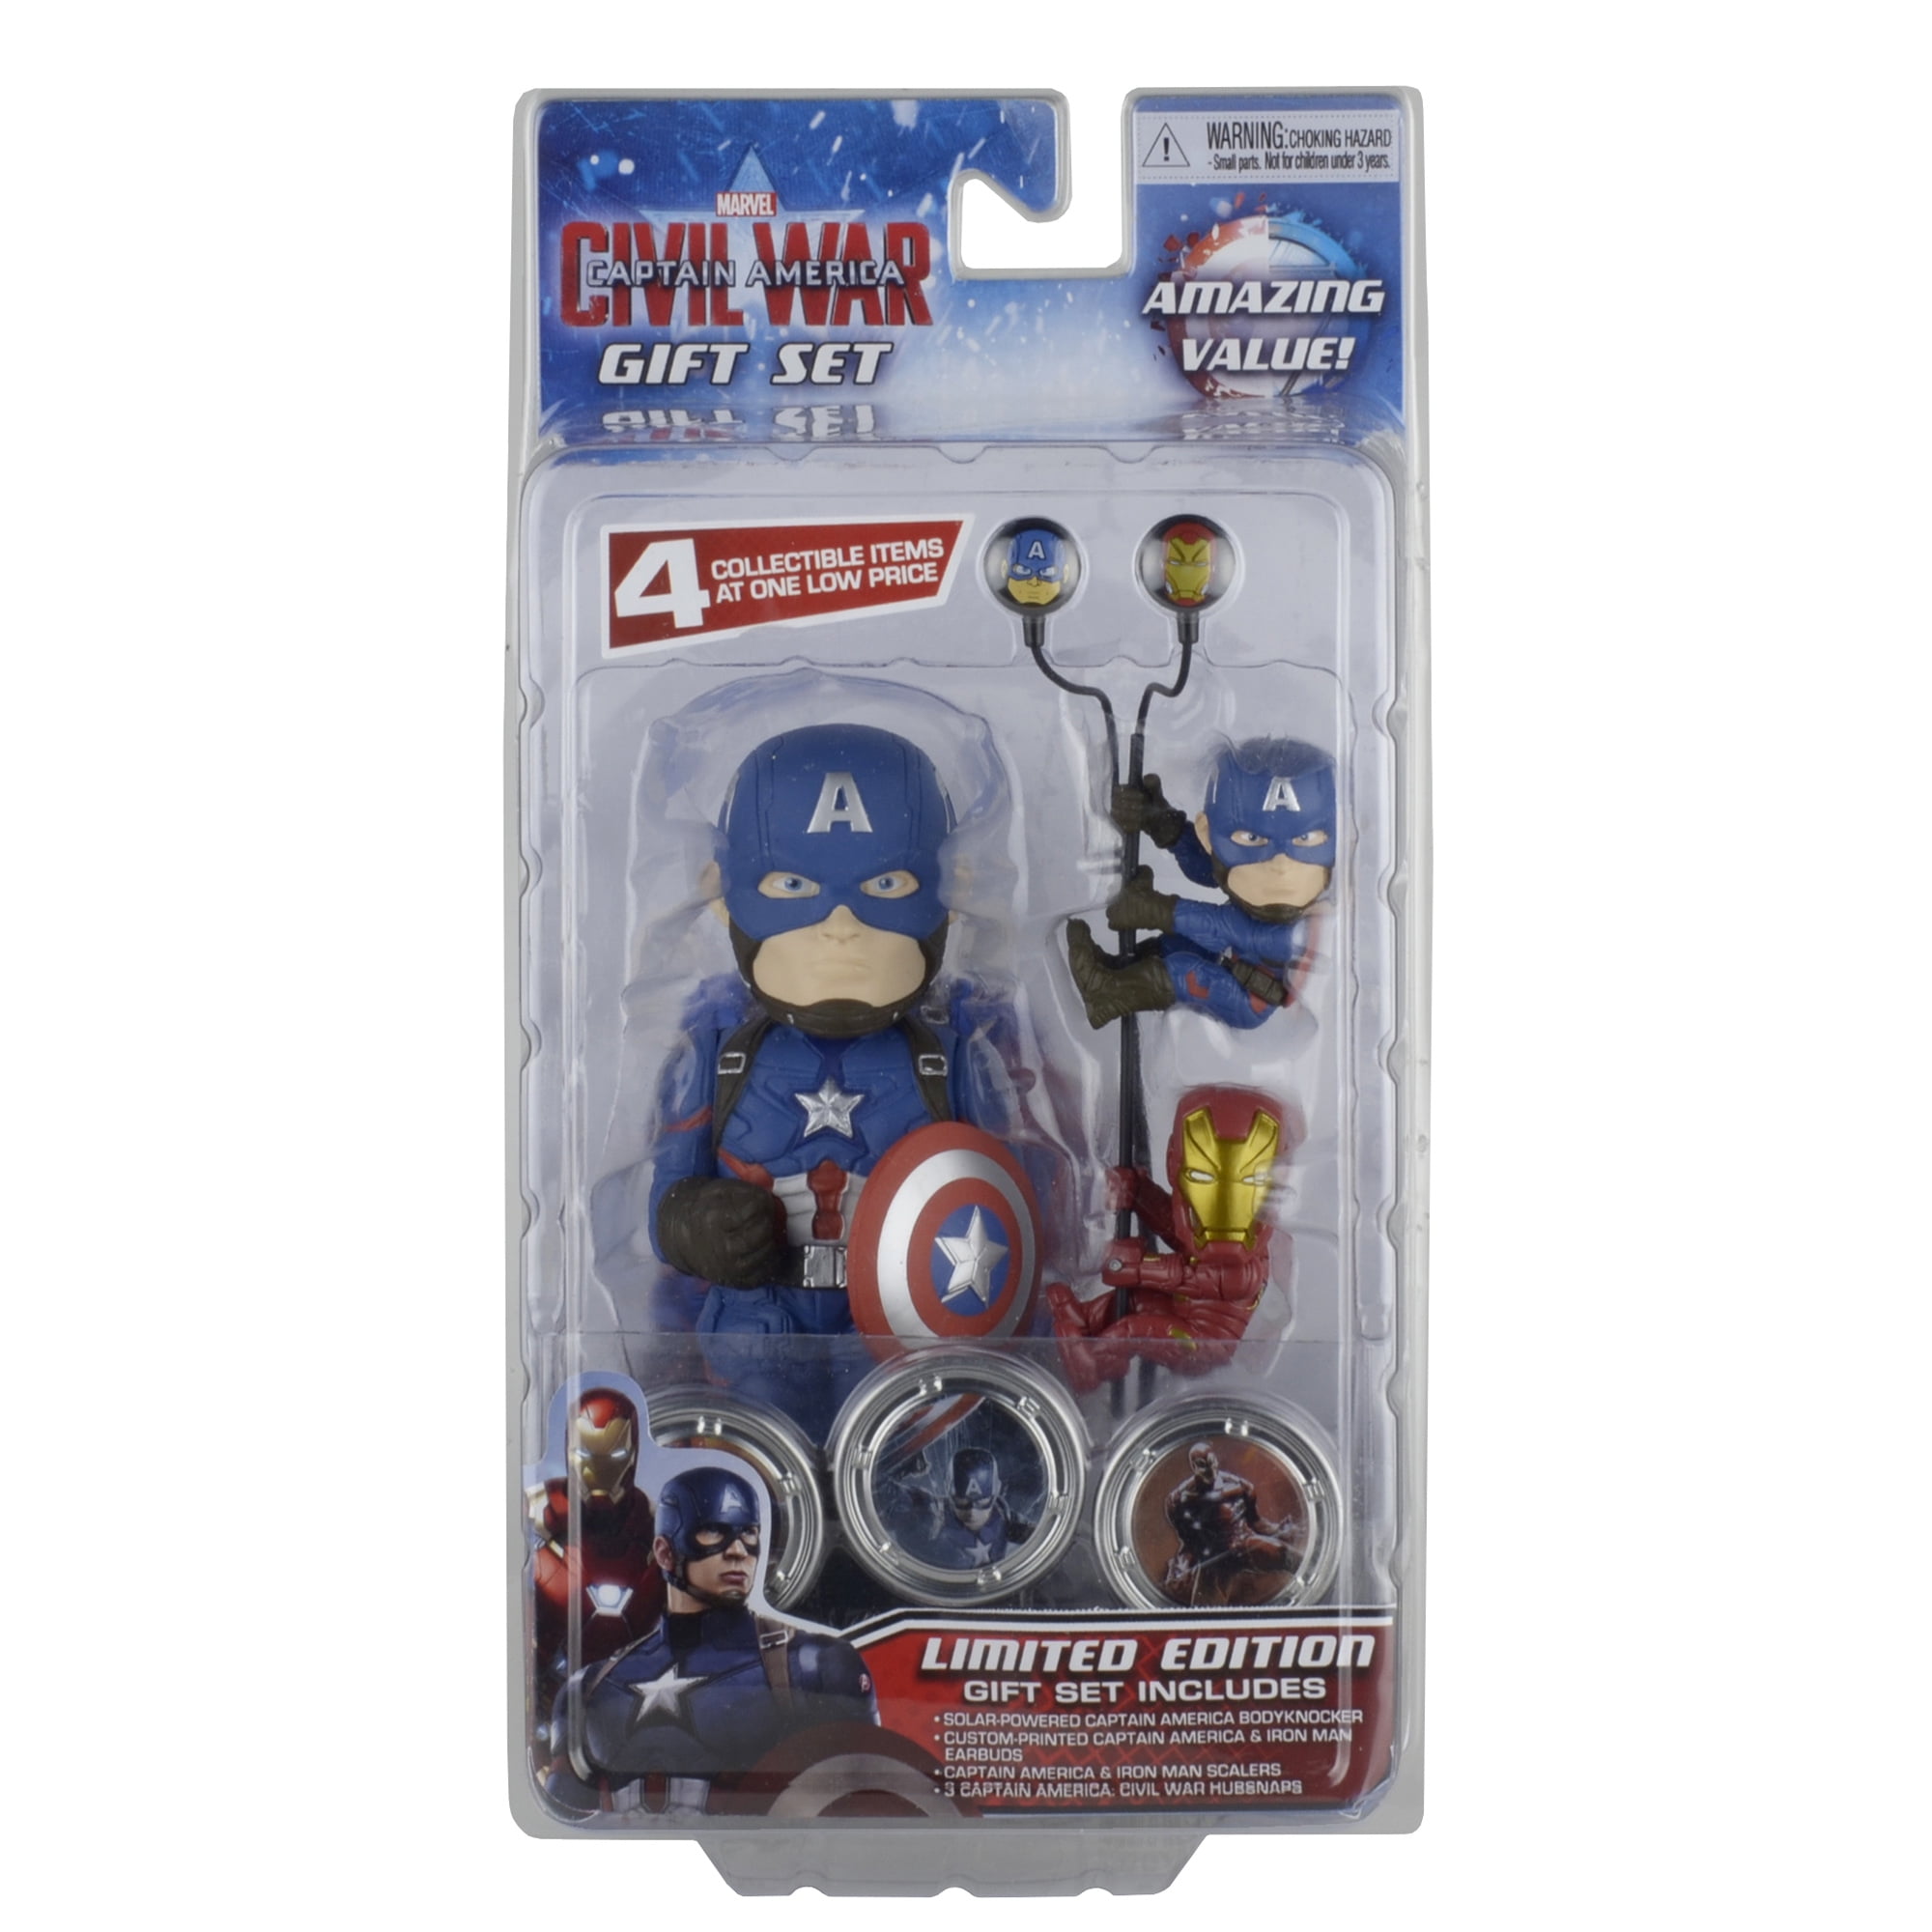 Marvel Captain America Civil War 20 Oz Mug , 6x4